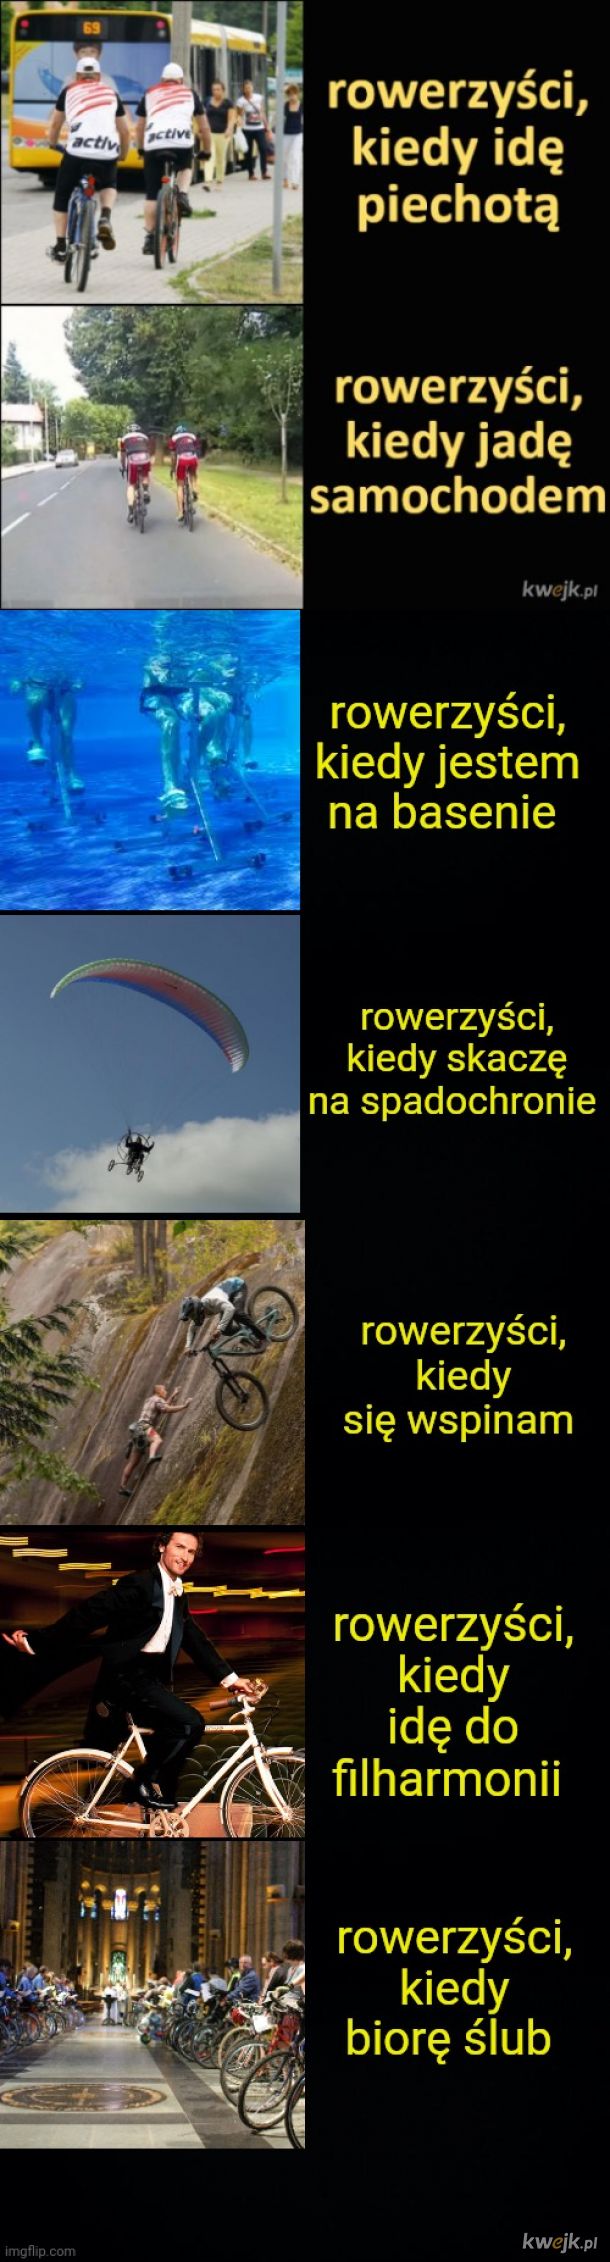 O--O rowerzyści kiedy wpisuje tytuł mema